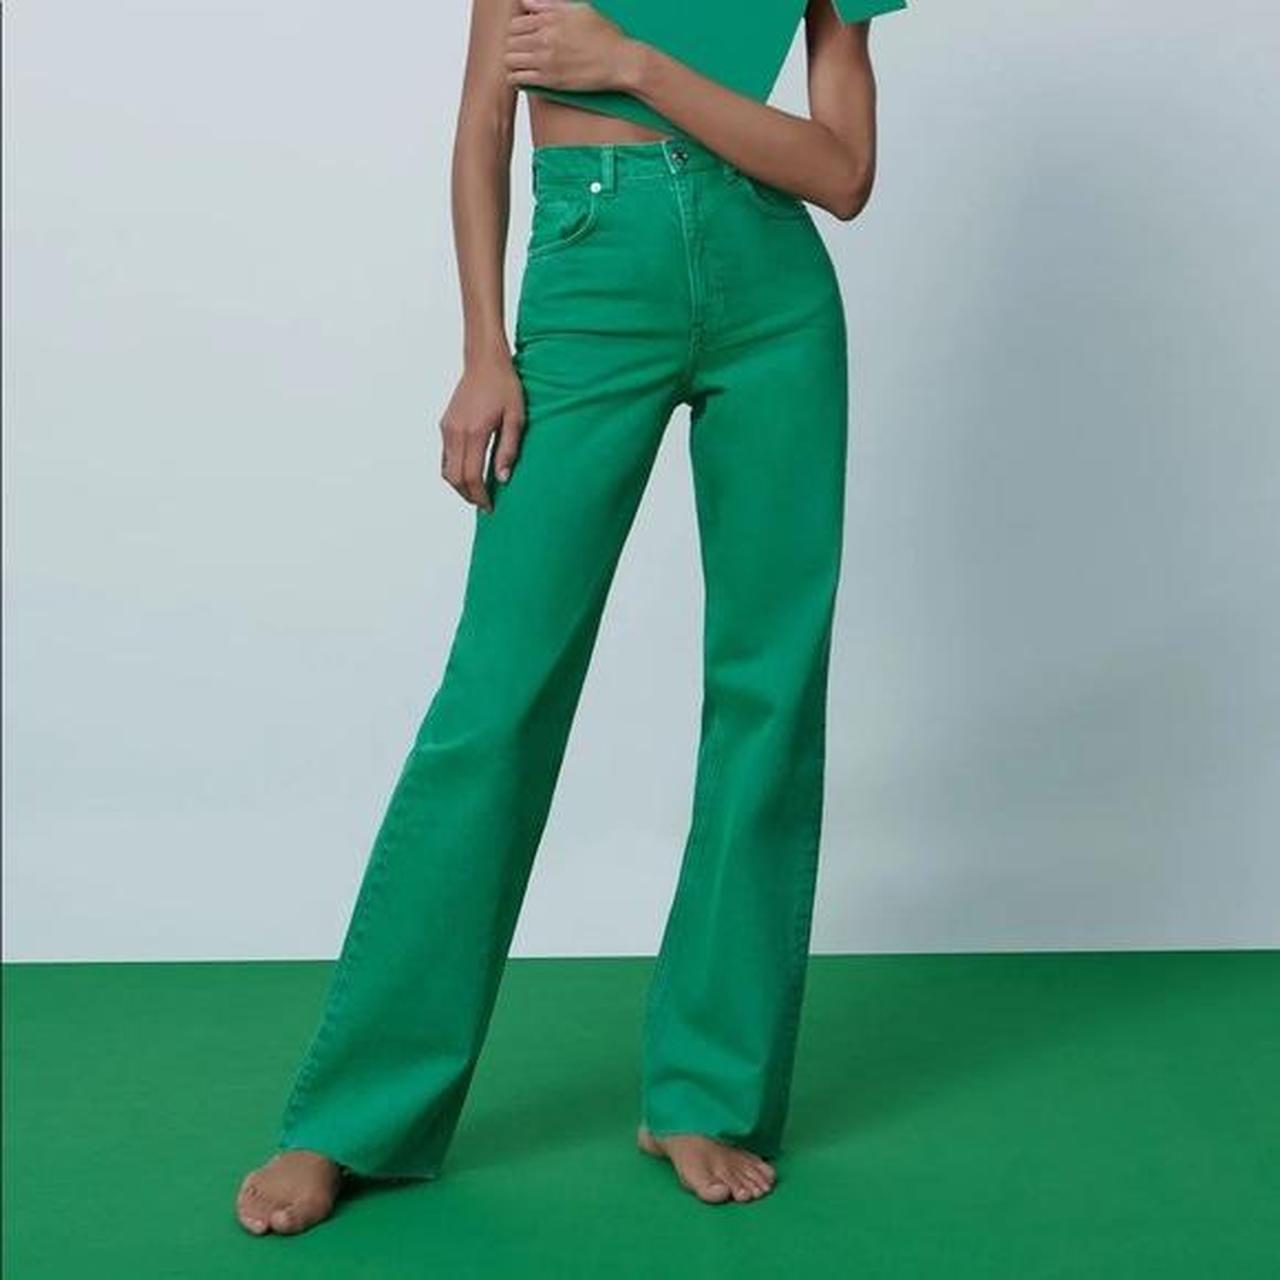 Zara green wide leg jeans size - 6 (xs - s) worn... - Depop